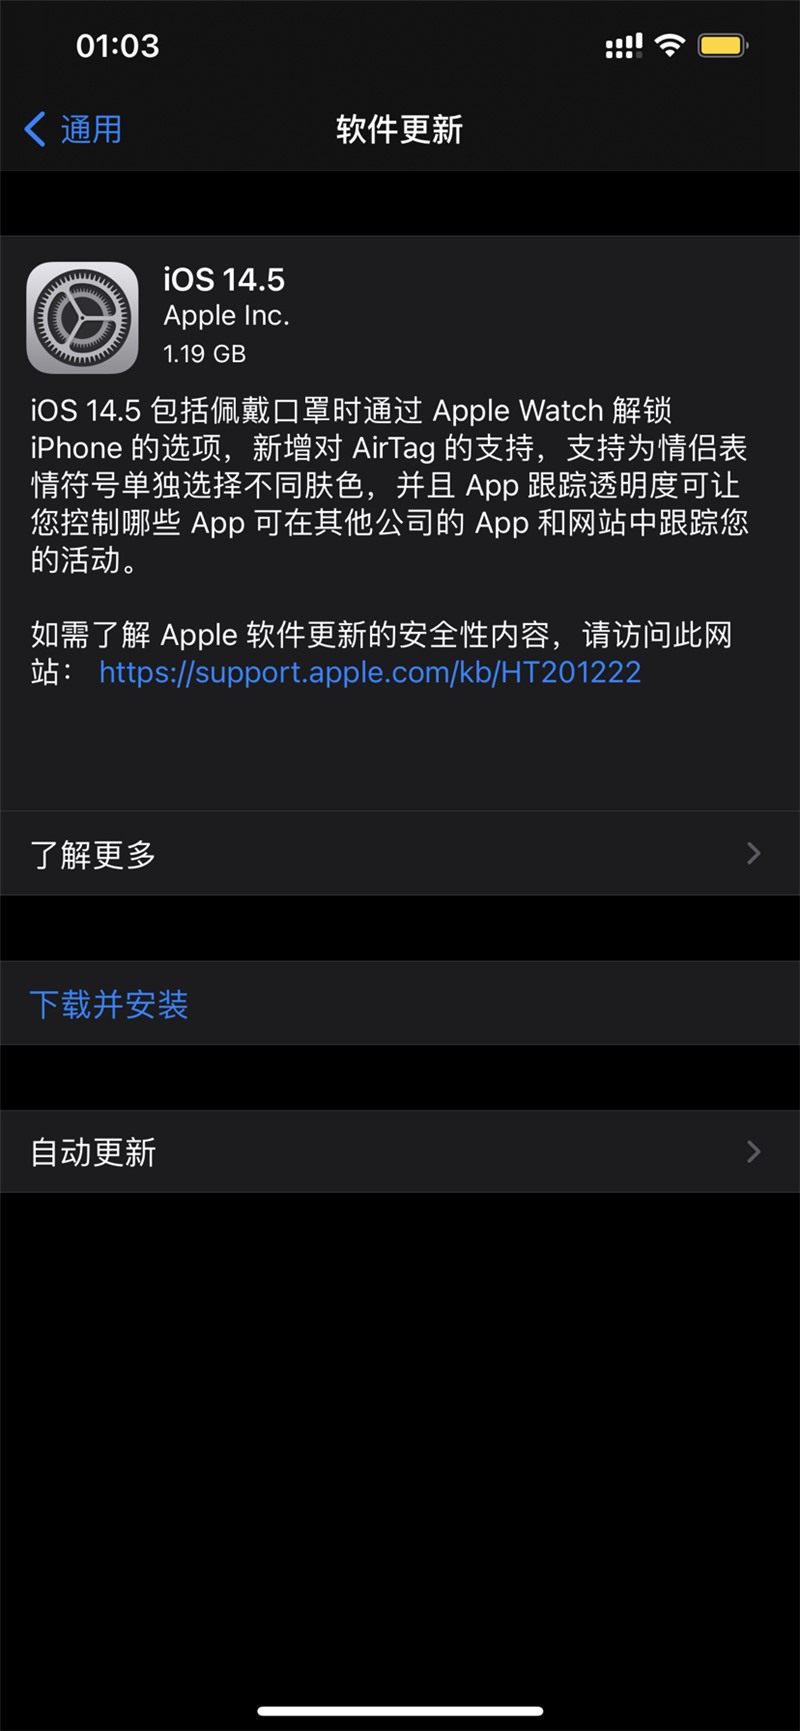 苹果发布 iOS 与 iPadOS 14.5，支持 Apple Watch 解锁 iPhone